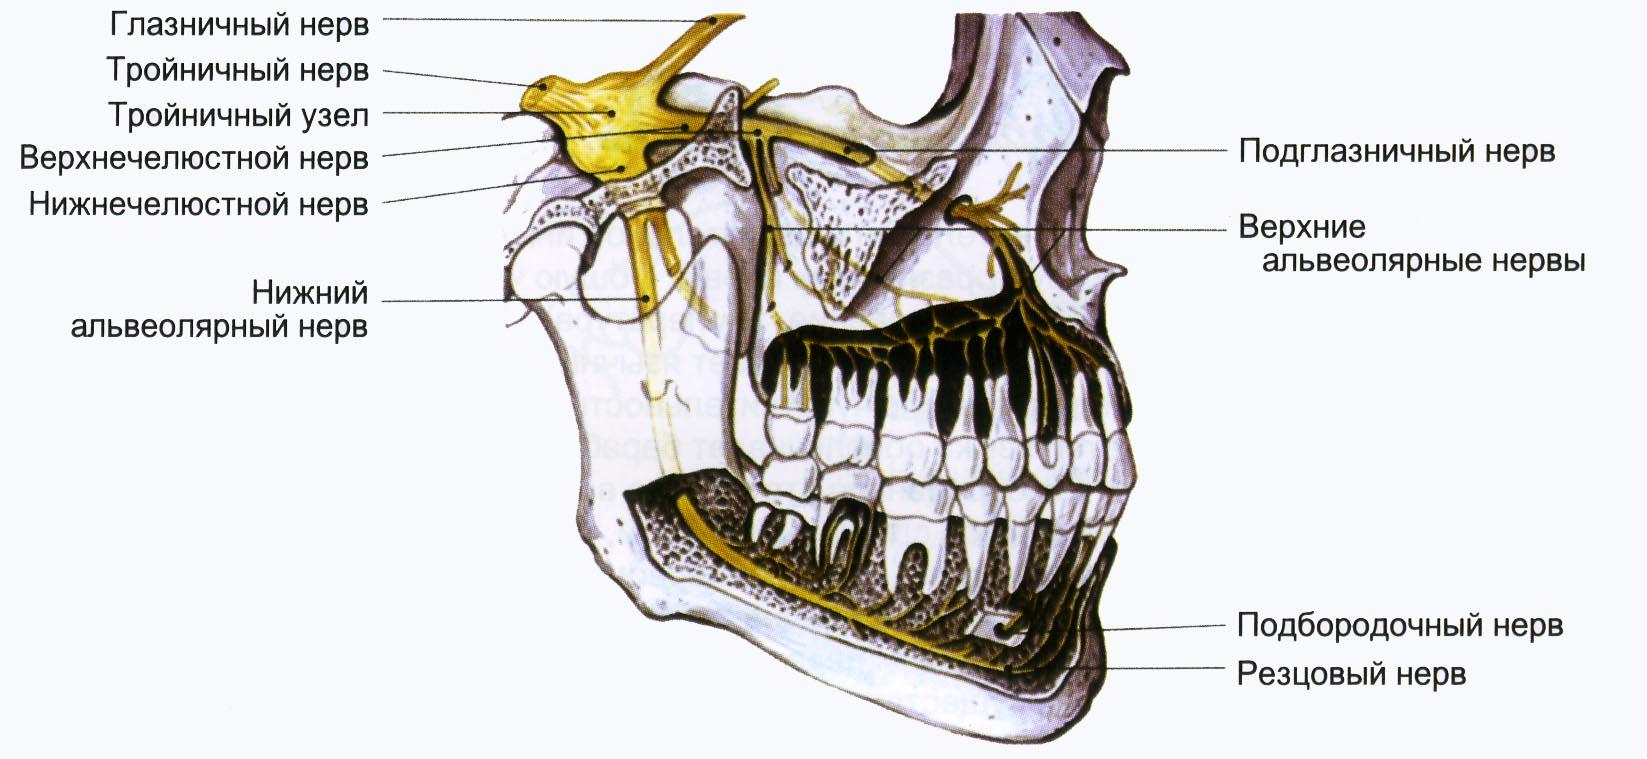 Нервы лицевой области. Иннервация верхней и нижней челюсти анатомия. Нижний альвеолярный нерв иннервирует. Нервная система челюсти человека. Нижний луночковый нерв анатомия.